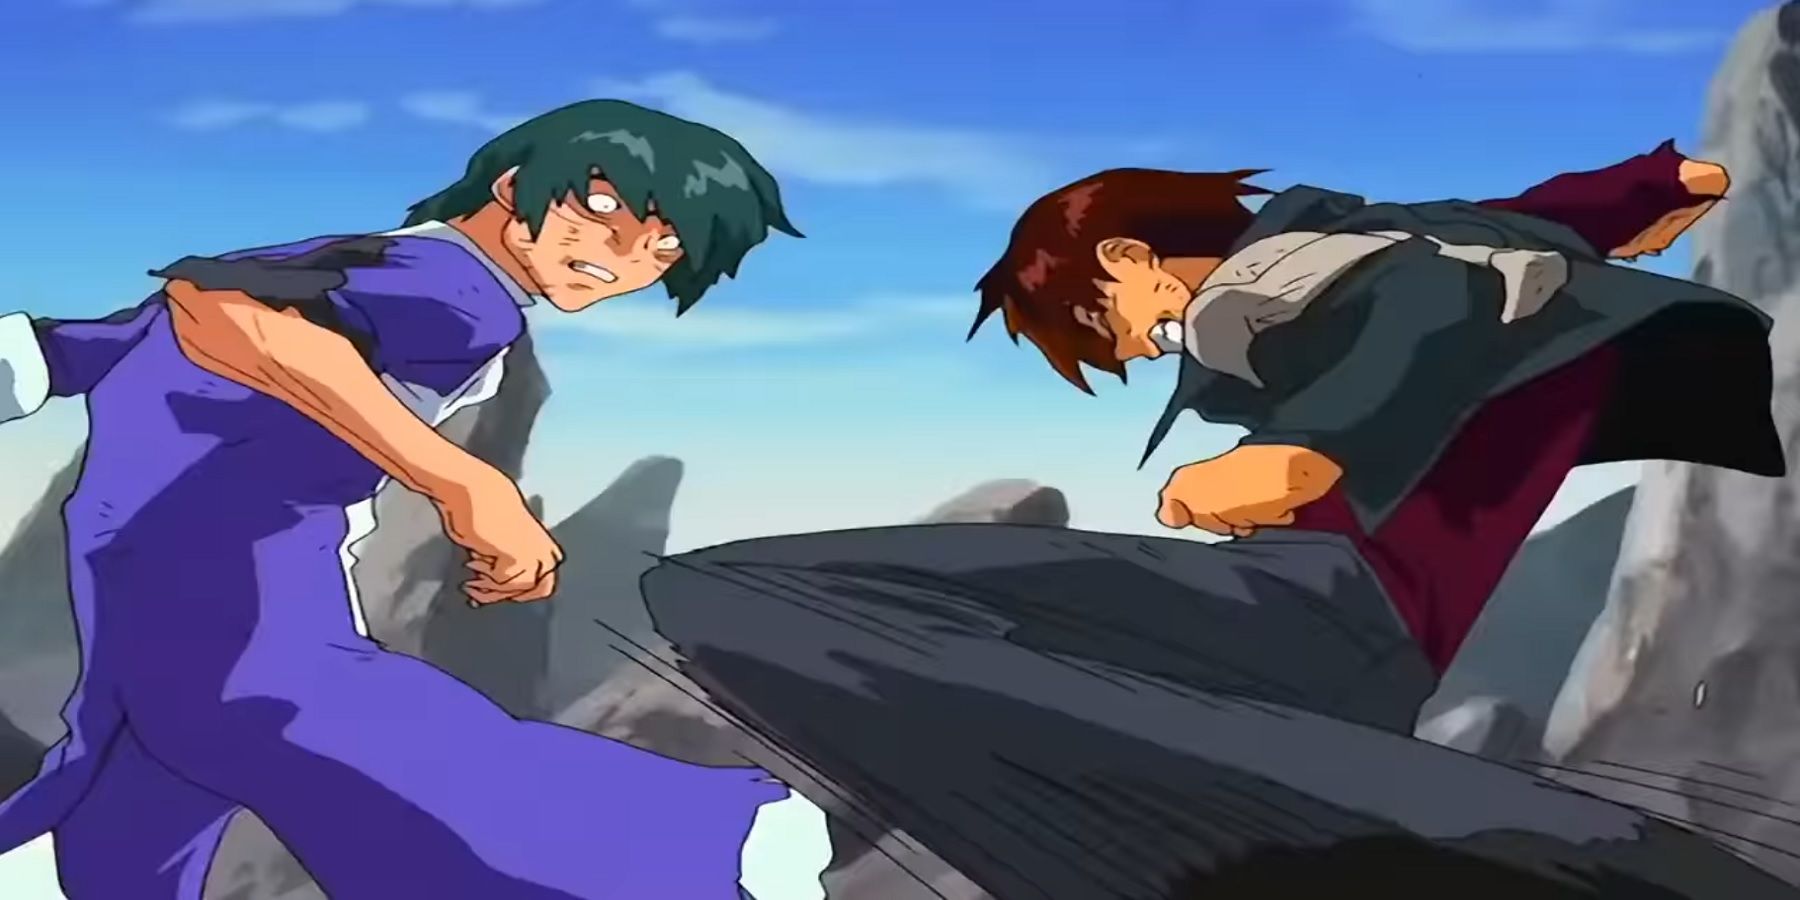 Kazuma vs Ryuho